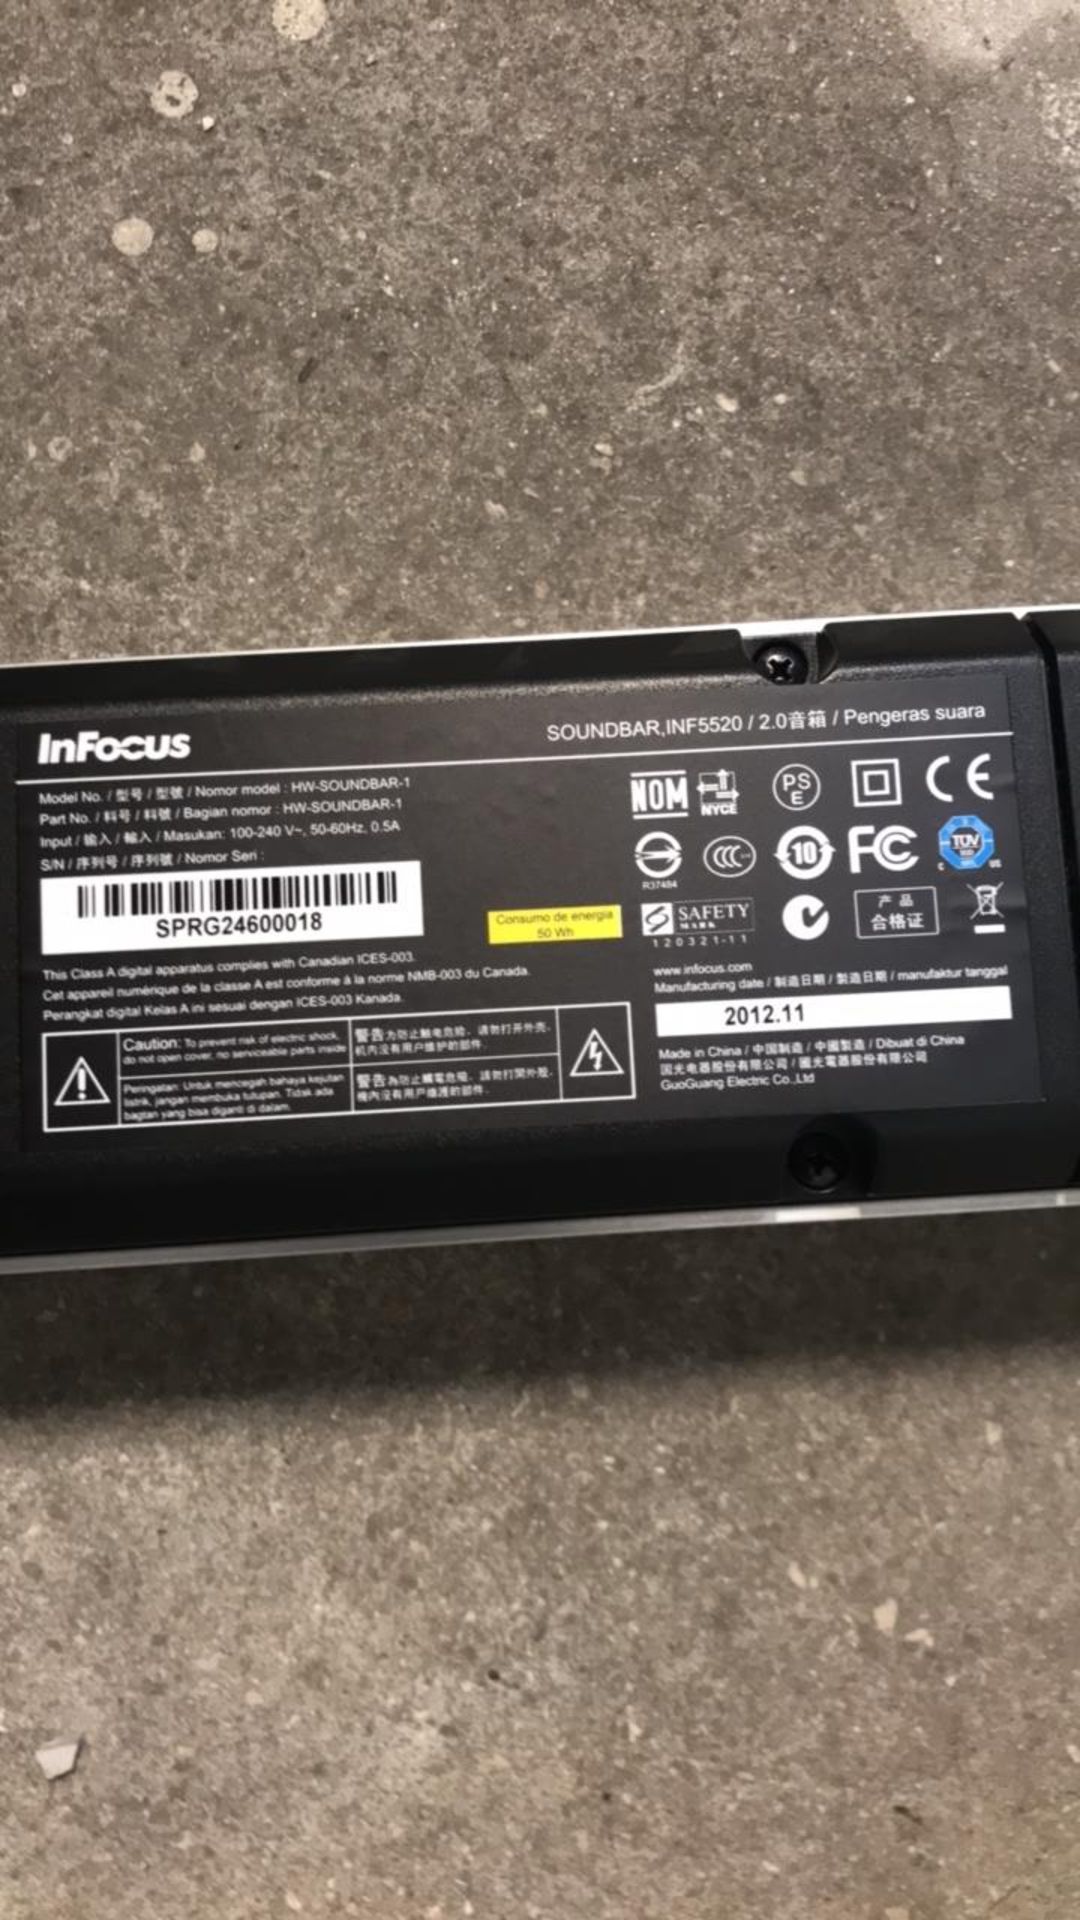 Monitor, Speaker, Battery Backup - Image 8 of 9